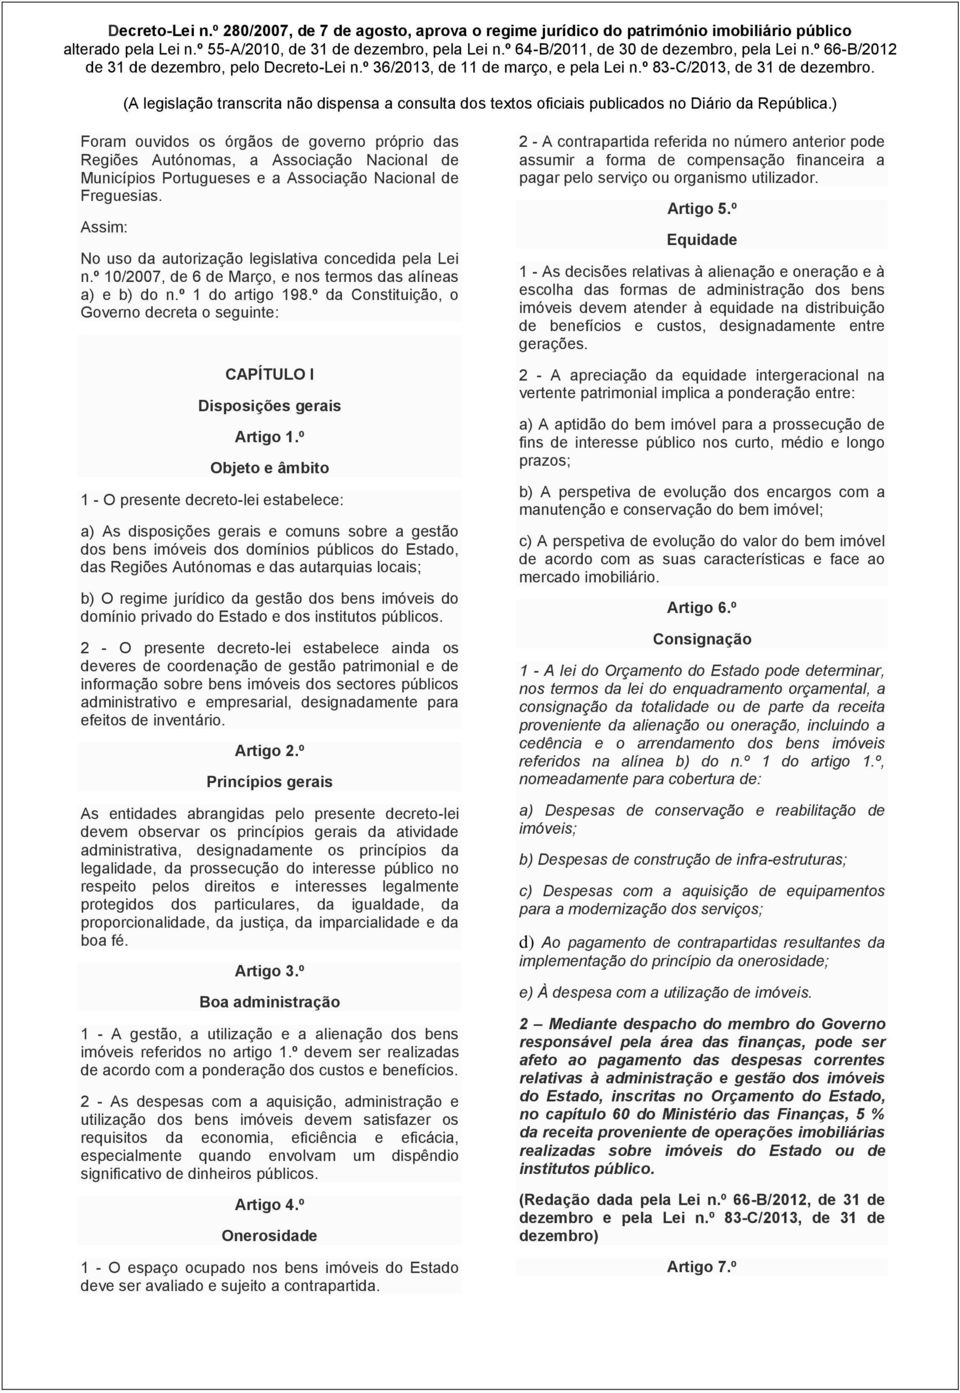 º da Constituição, o Governo decreta o seguinte: CAPÍTULO I Disposições gerais Artigo 1.